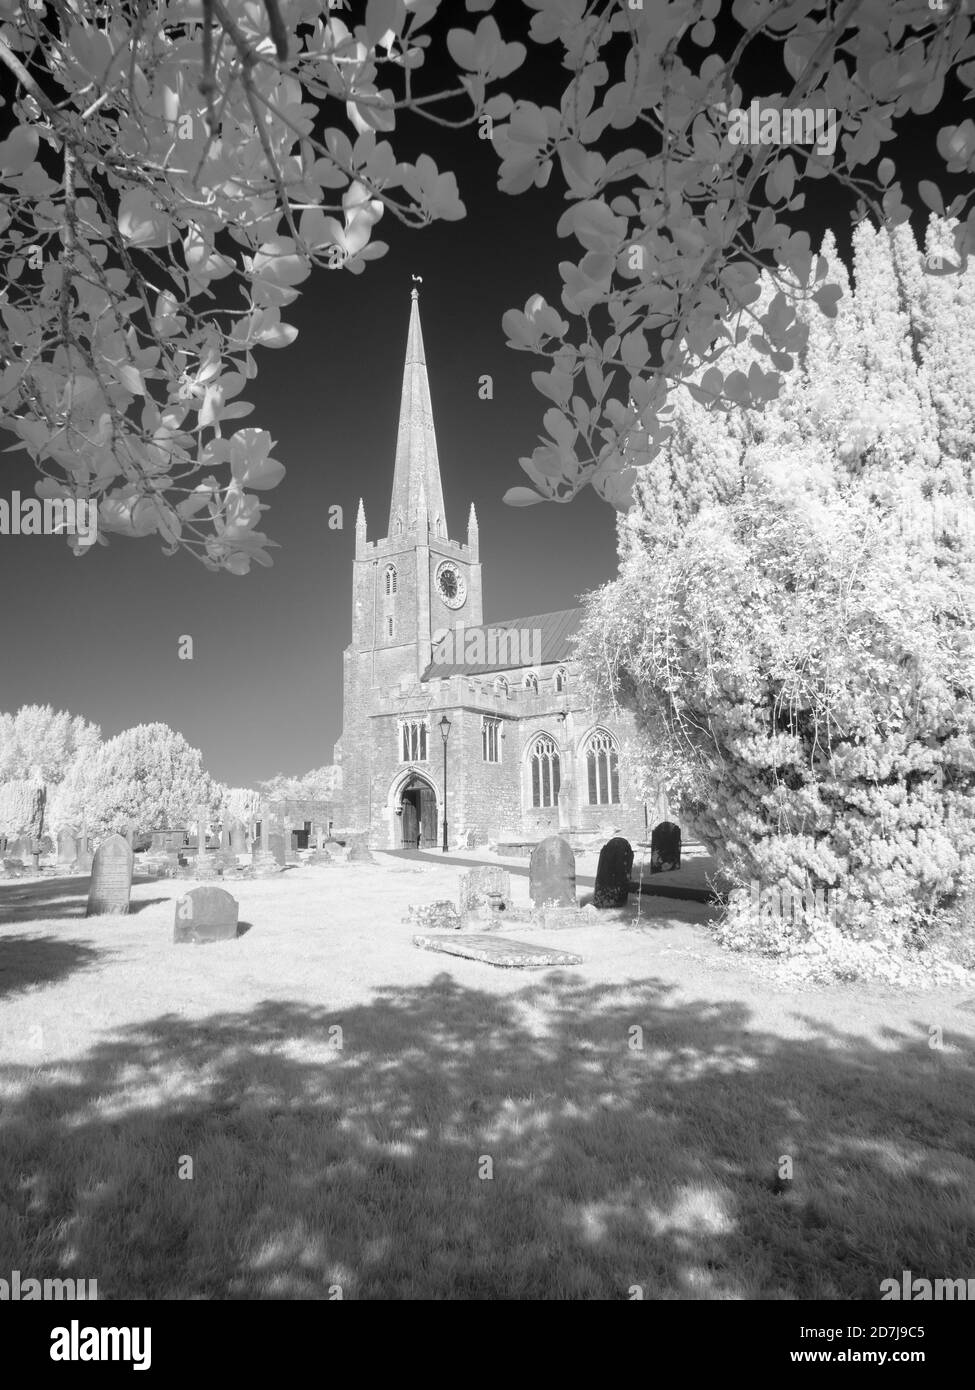 Une image infrarouge noir et blanc de l'église St Andrews à Congresbury, dans le nord du Somerset, en Angleterre. Banque D'Images